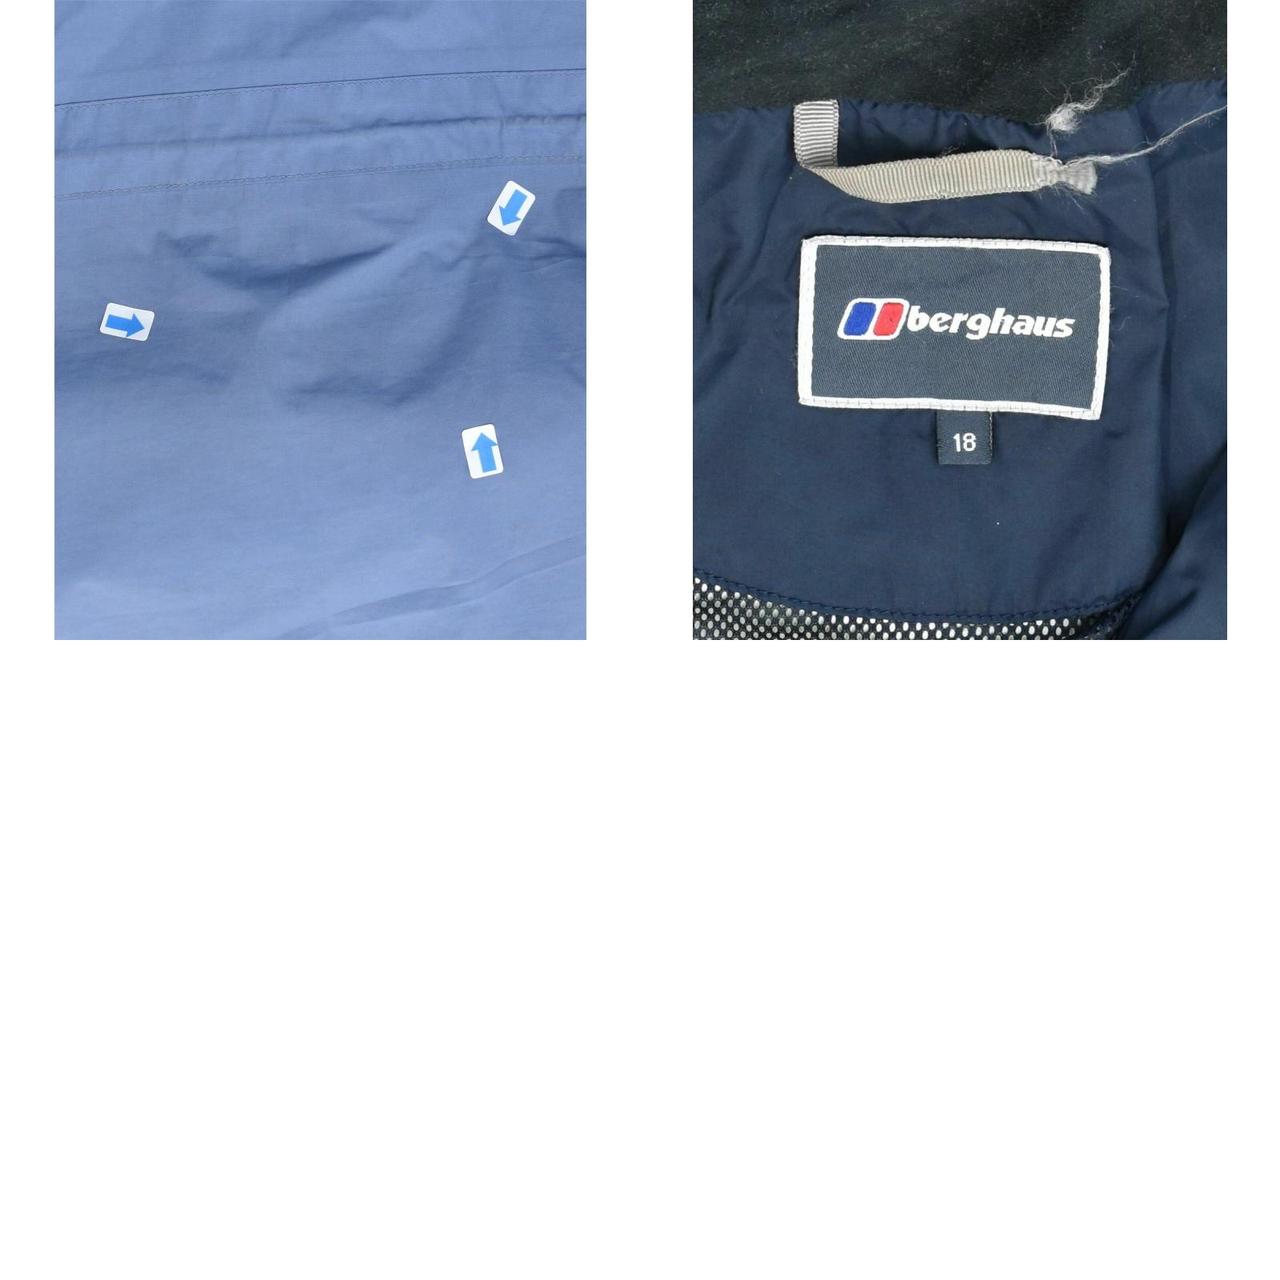 Product Image 4 - BERGHAUS Womens Windbreaker Jacket UK